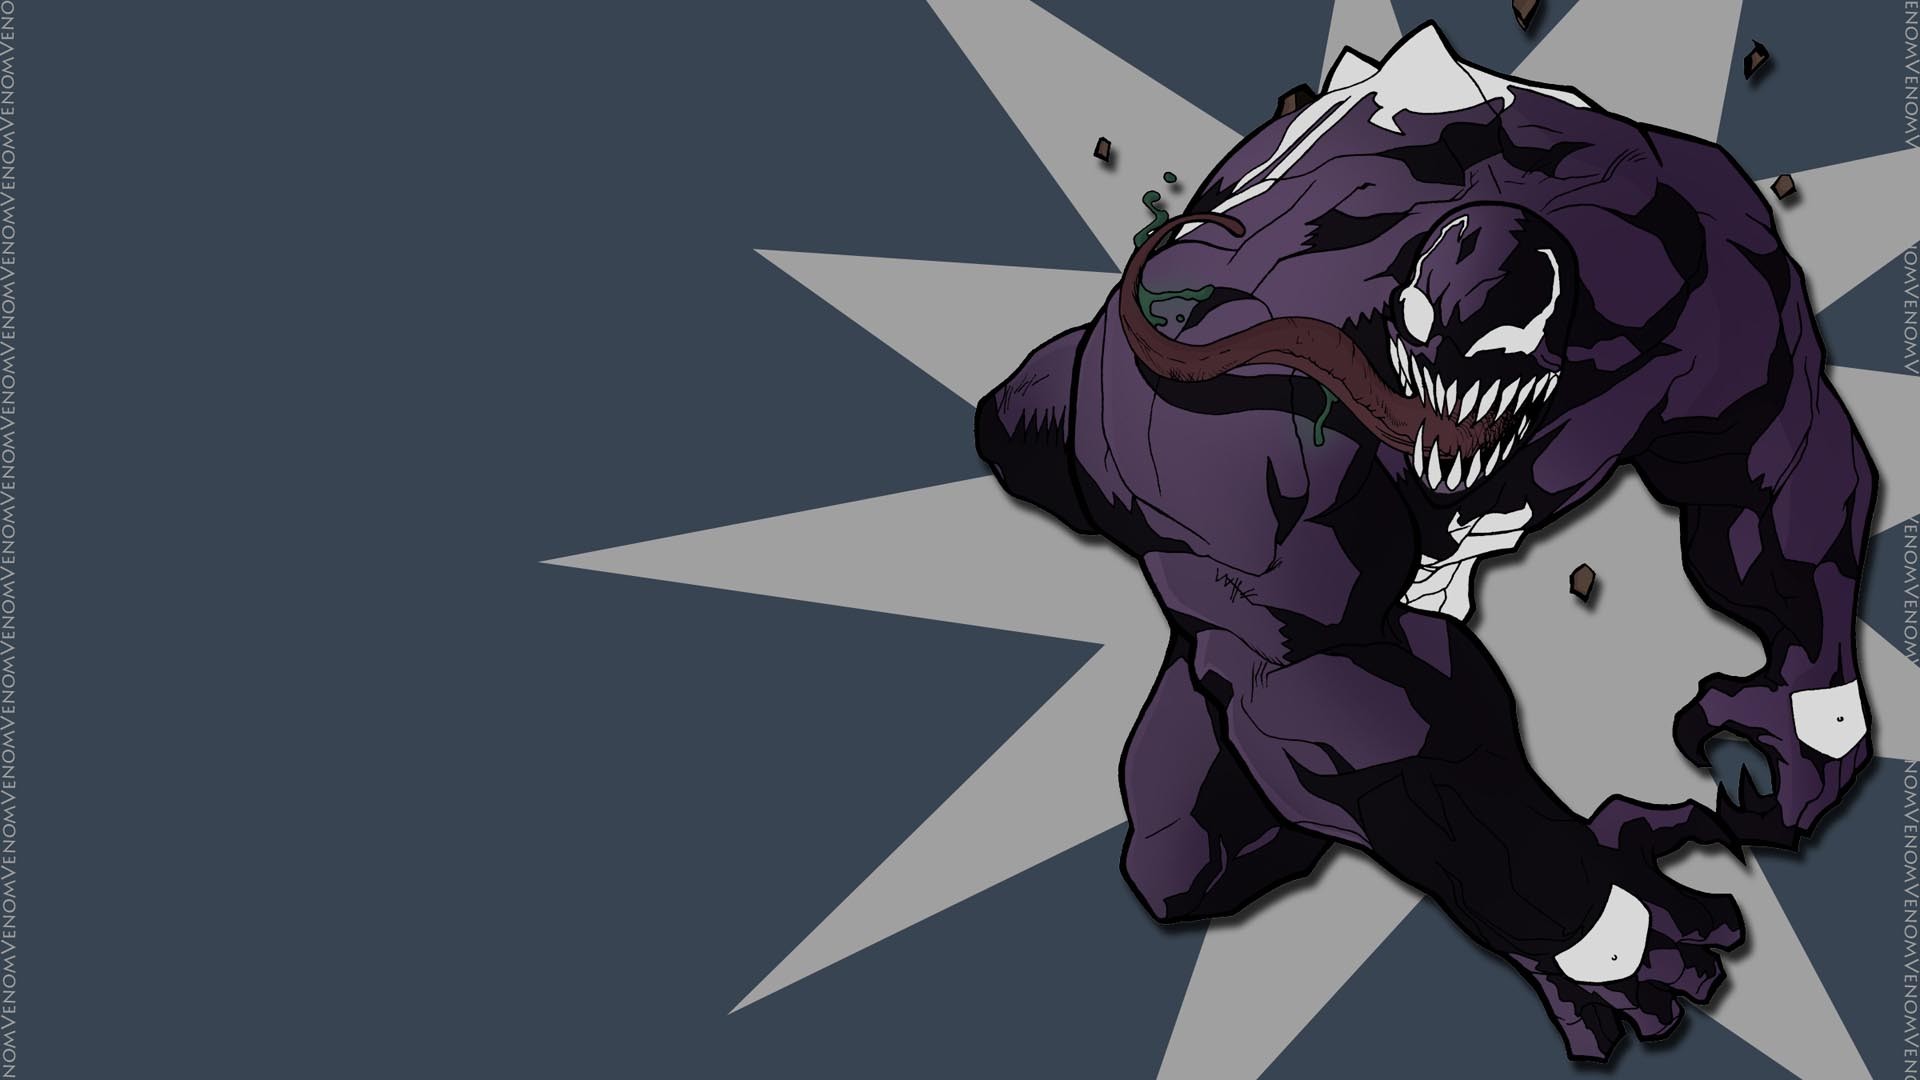 marvel venom wallpaper,fictional character,cartoon,illustration,supervillain